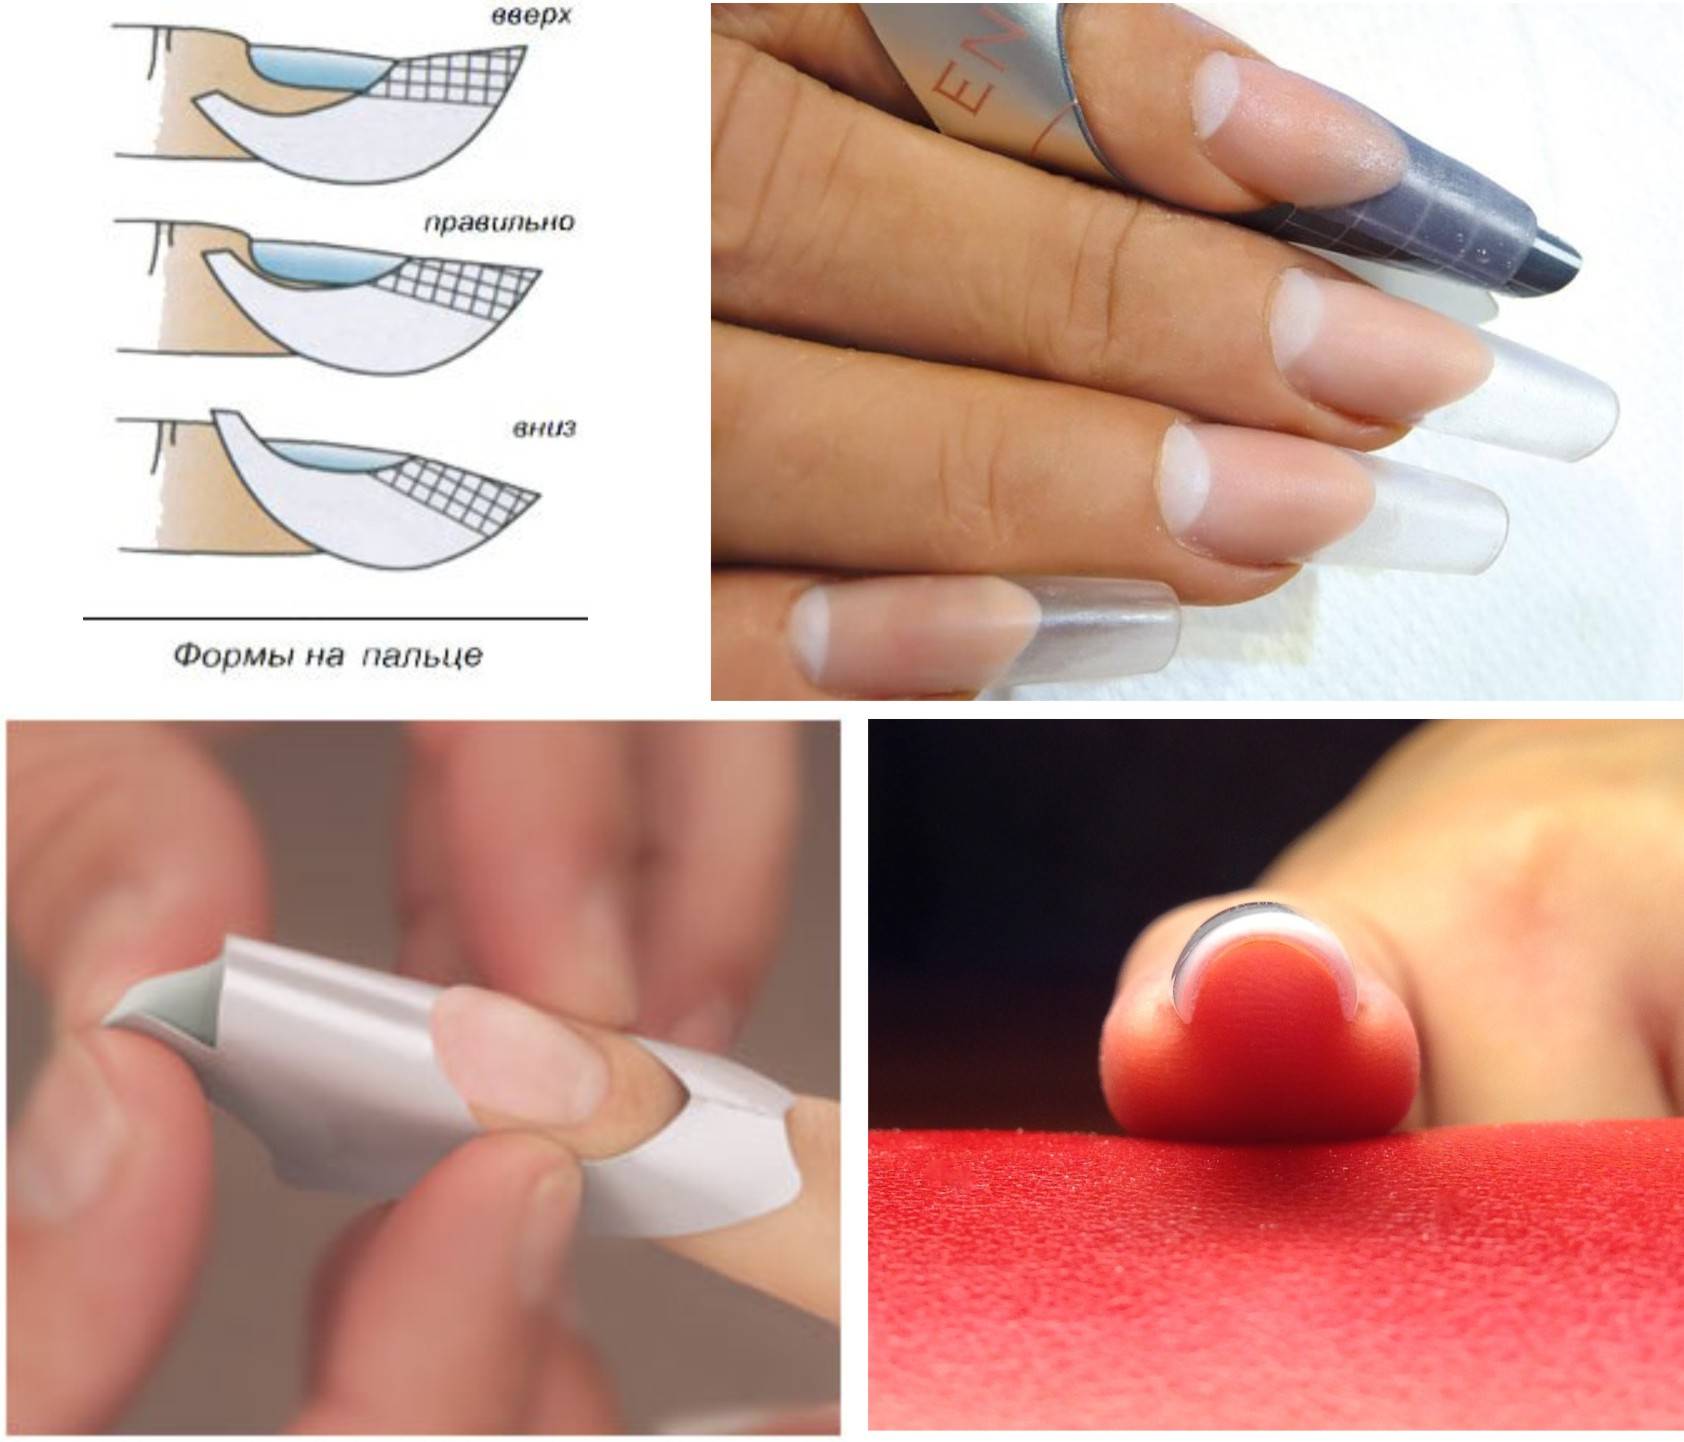 Акриловый маникюр: фото идеи и видео мастер-класс как сделать красивый дизайн ногтей